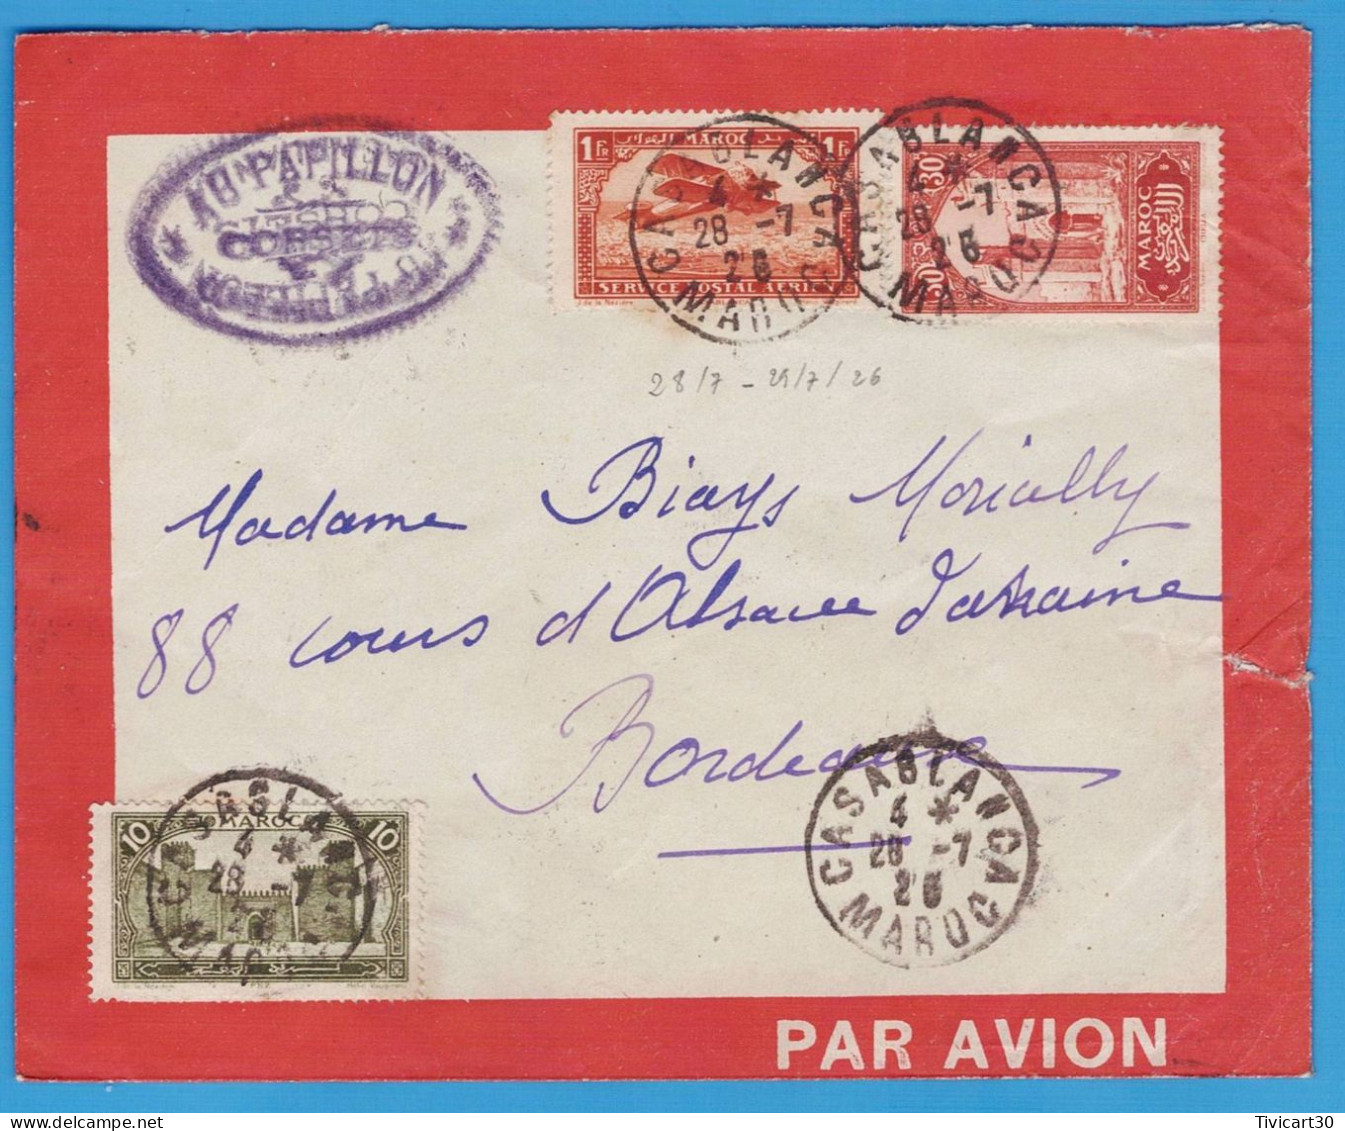 LETTRE PAR AVION DE 1926 - LIGNES AERIENNES LATECOERE FRANCE-MAROC - CASABLANCA (MAROC) POUR BORDEAUX - Posta Aerea